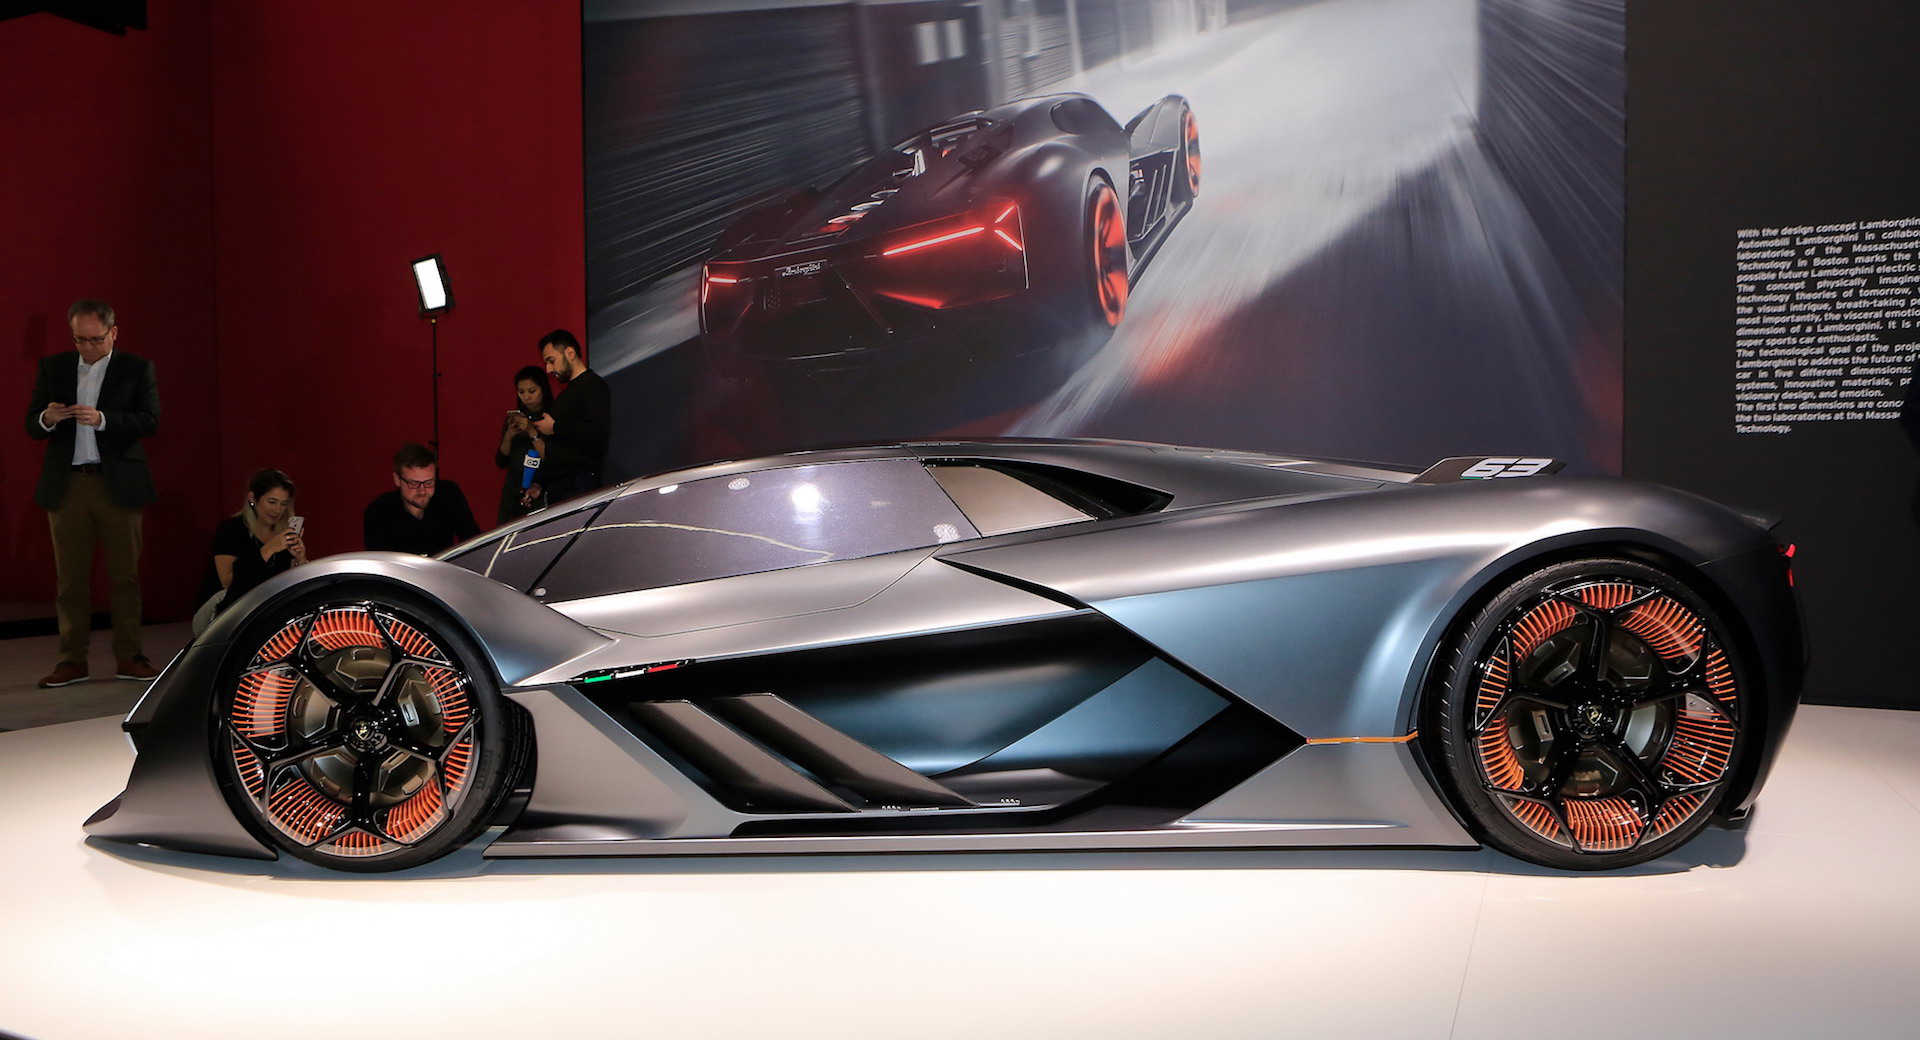 Lamborghini Terzo Millennio is a 'possible future' electric supercar